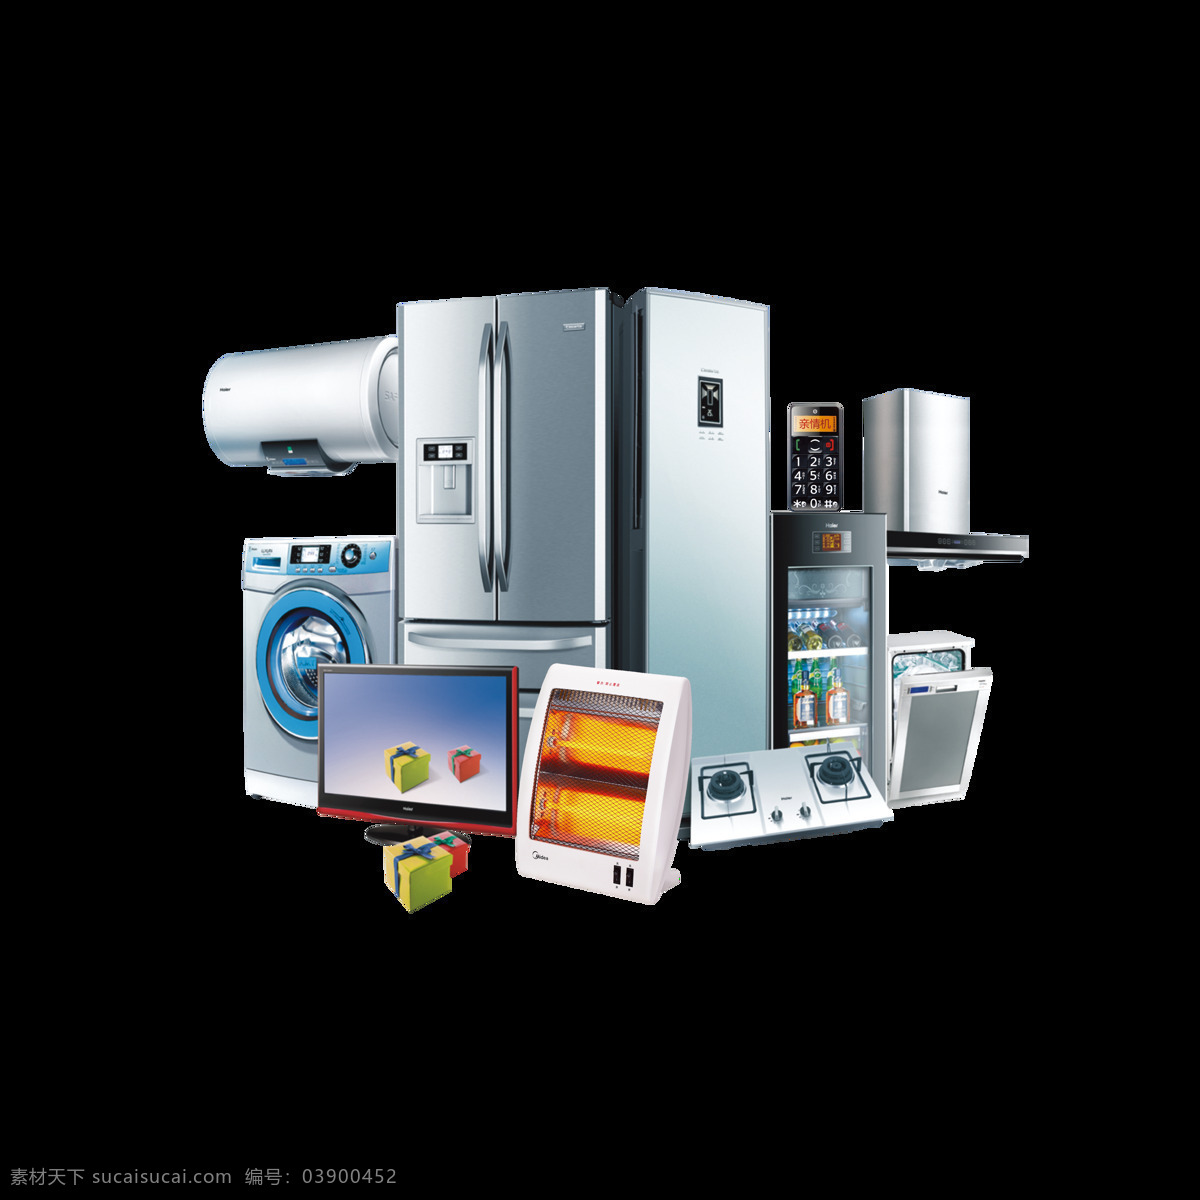 商场 电器 促销 产品 实物 产品实物 冰箱 洗衣机 热水器 电视